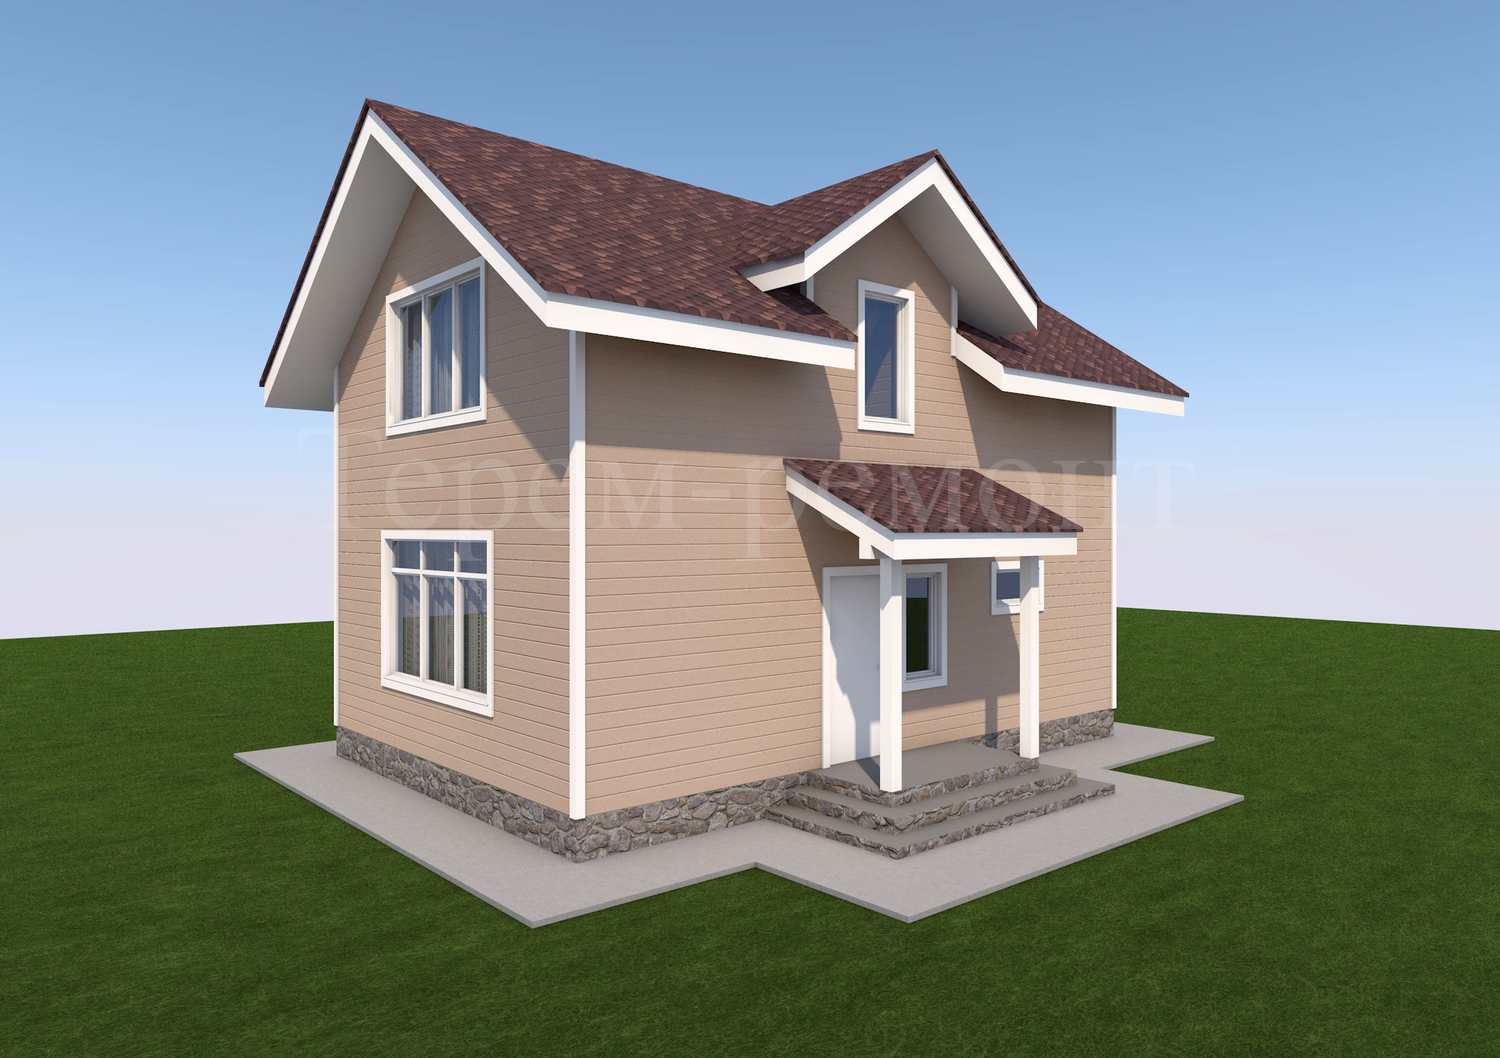 Проект дома Д1, каркасный дом 81 м2, стоимость 1 936 00 руб. Успейте купить по акции тел. +79112291016